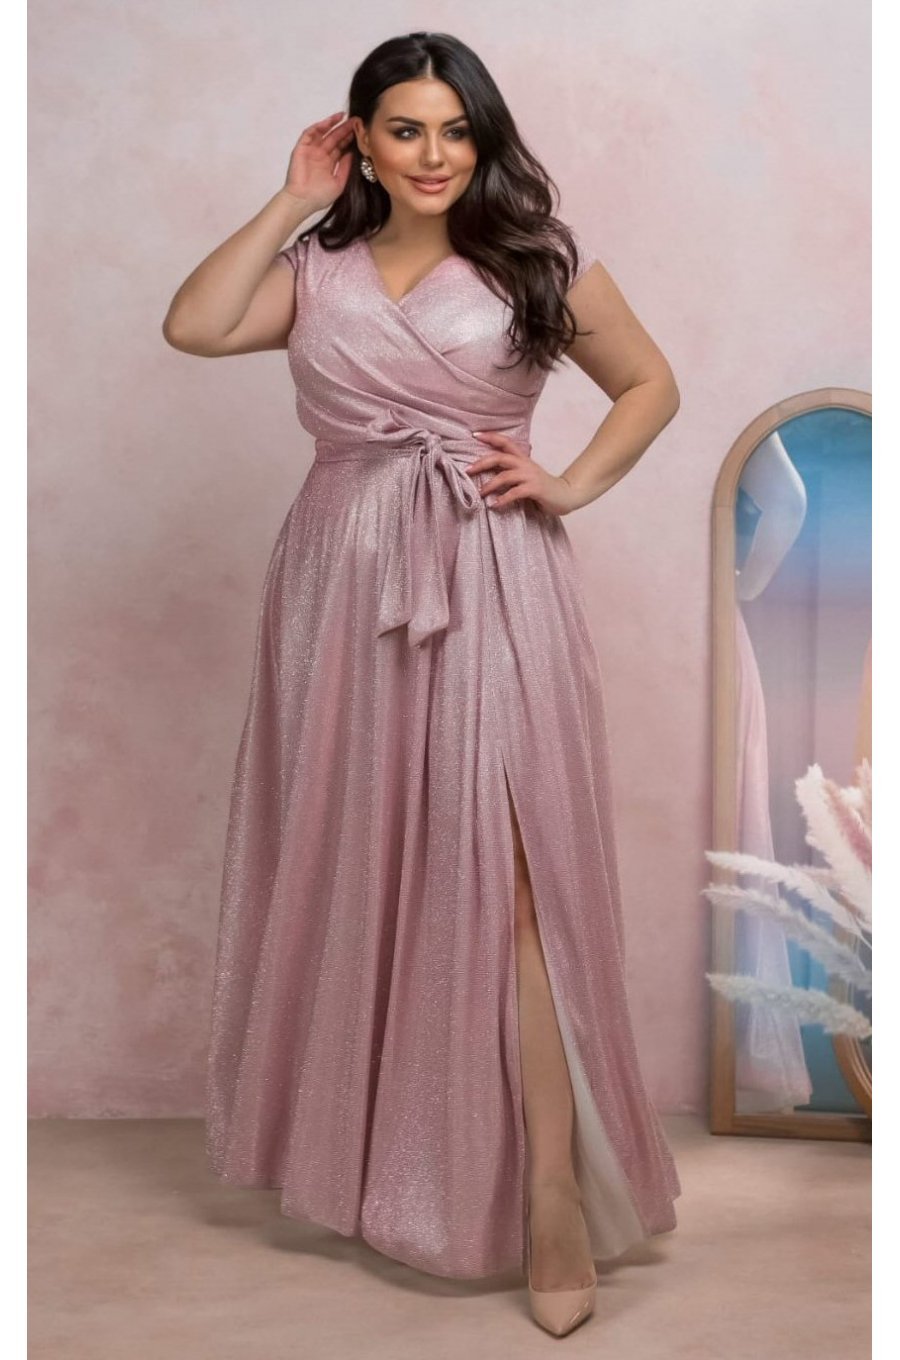 Rochie eleganta in marimi mari, lunga, din bumbac cu glitter, roz prafuit, crapata pe picior, AmandaW 1 - jojofashion.ro